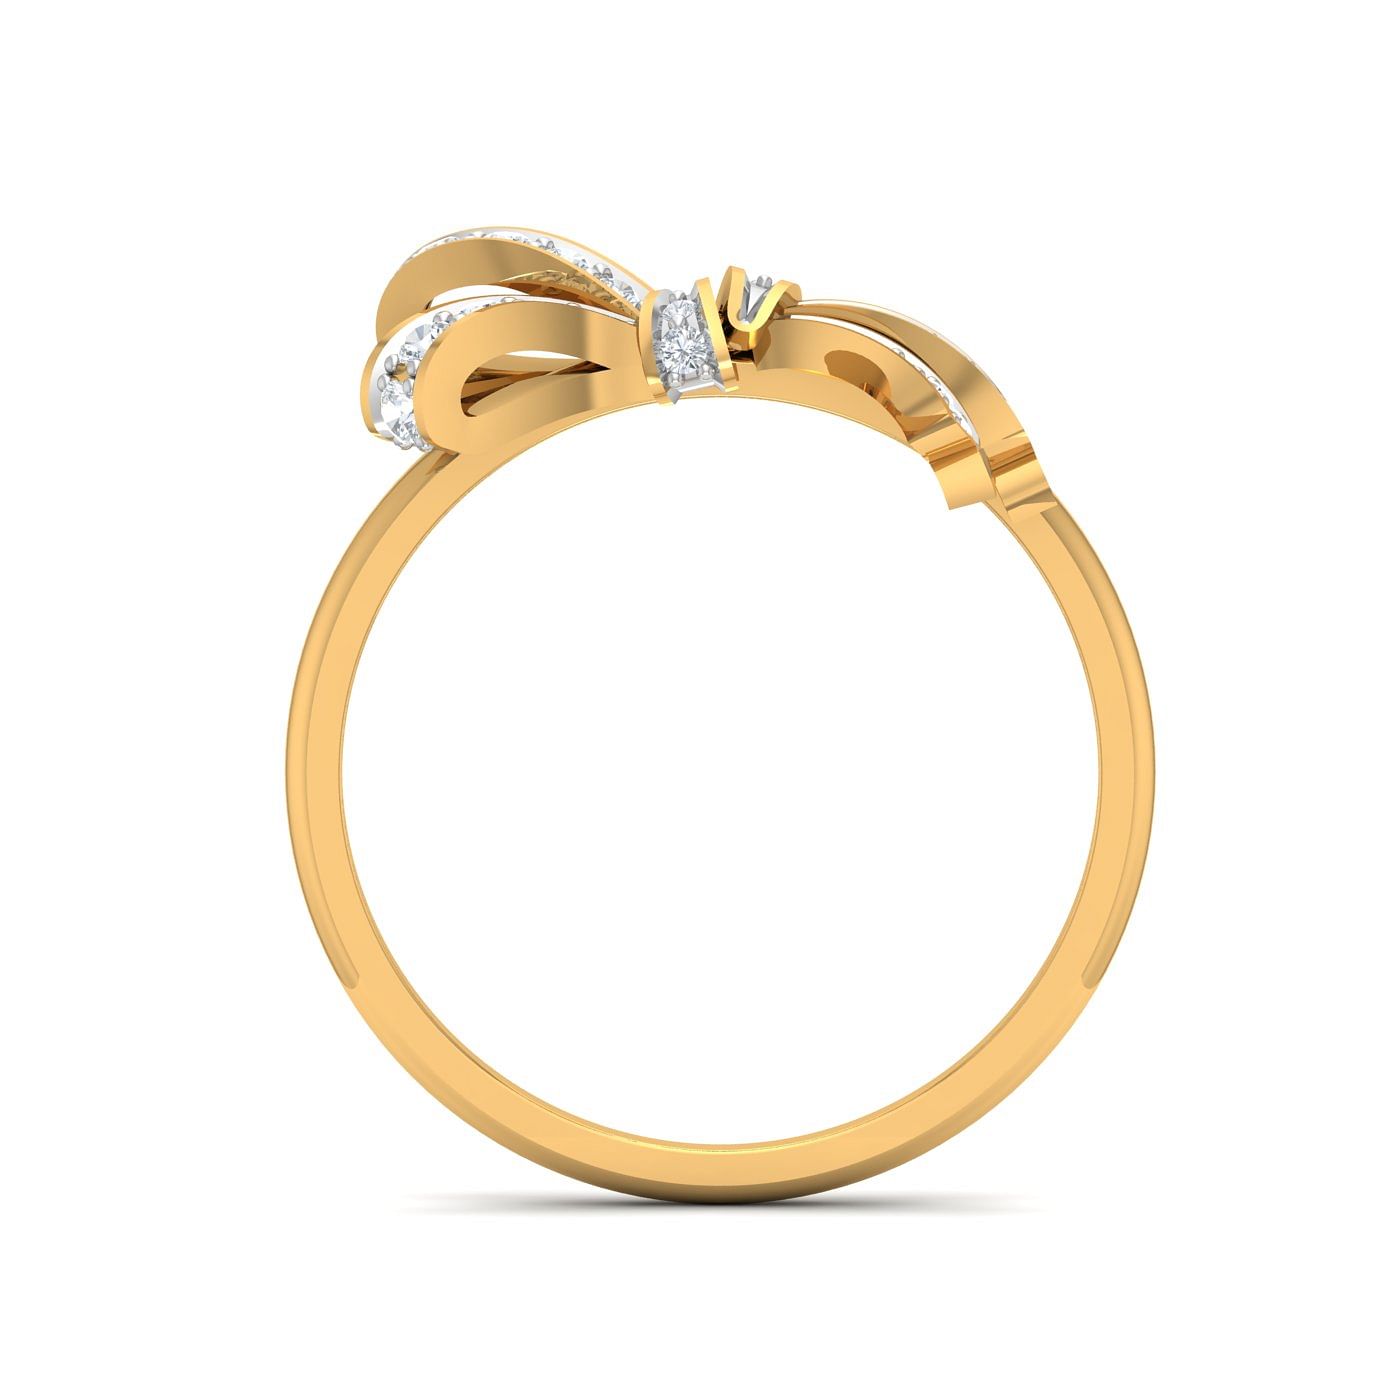 Naira Diamond Ring With Yellow Gold